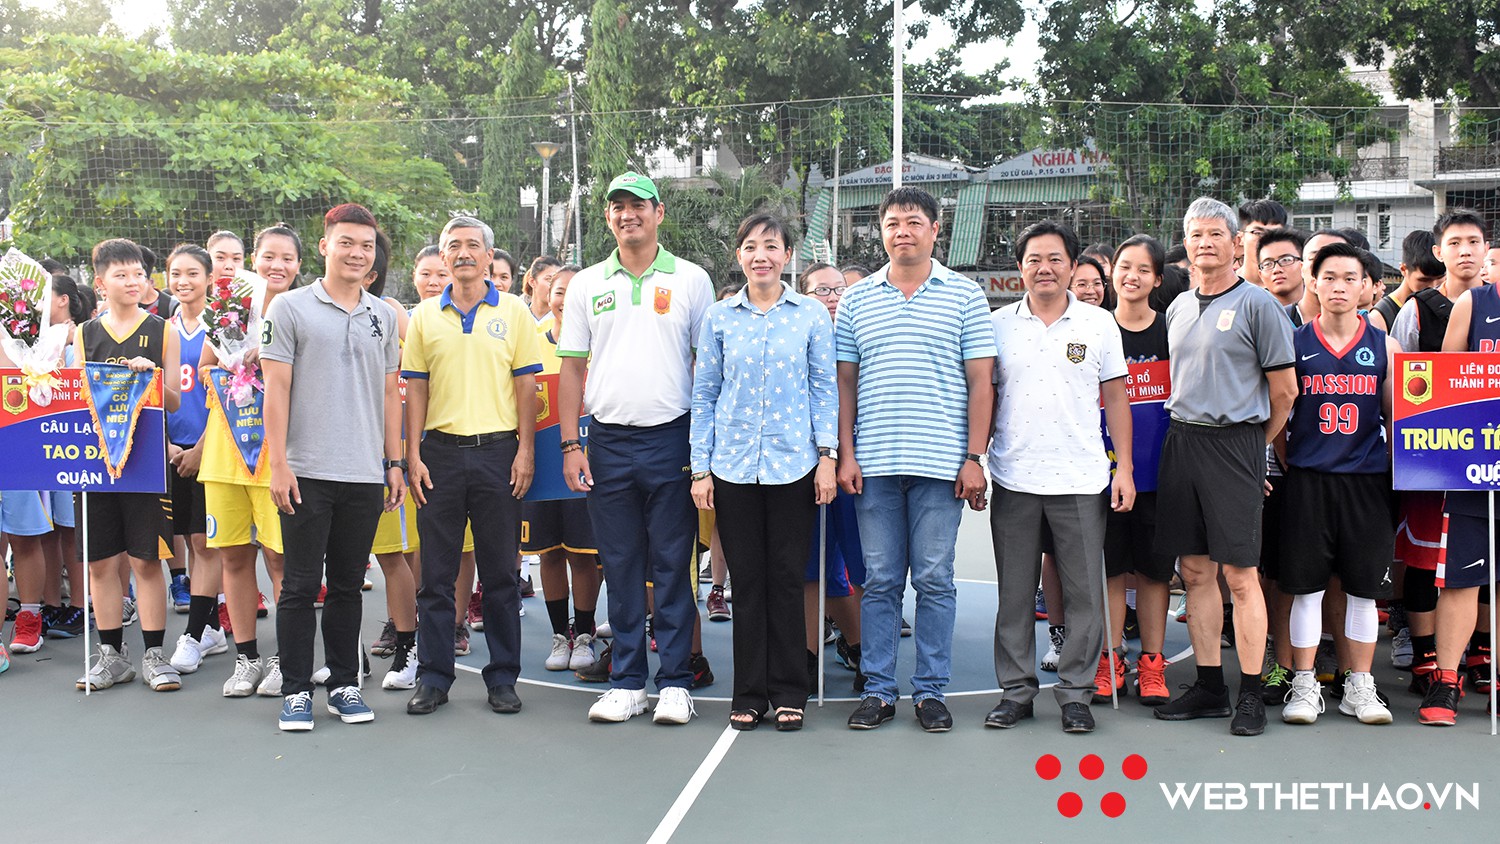 Khai mạc Giải bóng rổ Vô địch 3x3 Thành phố Hồ Chí Minh năm 2018 - Ảnh 4.